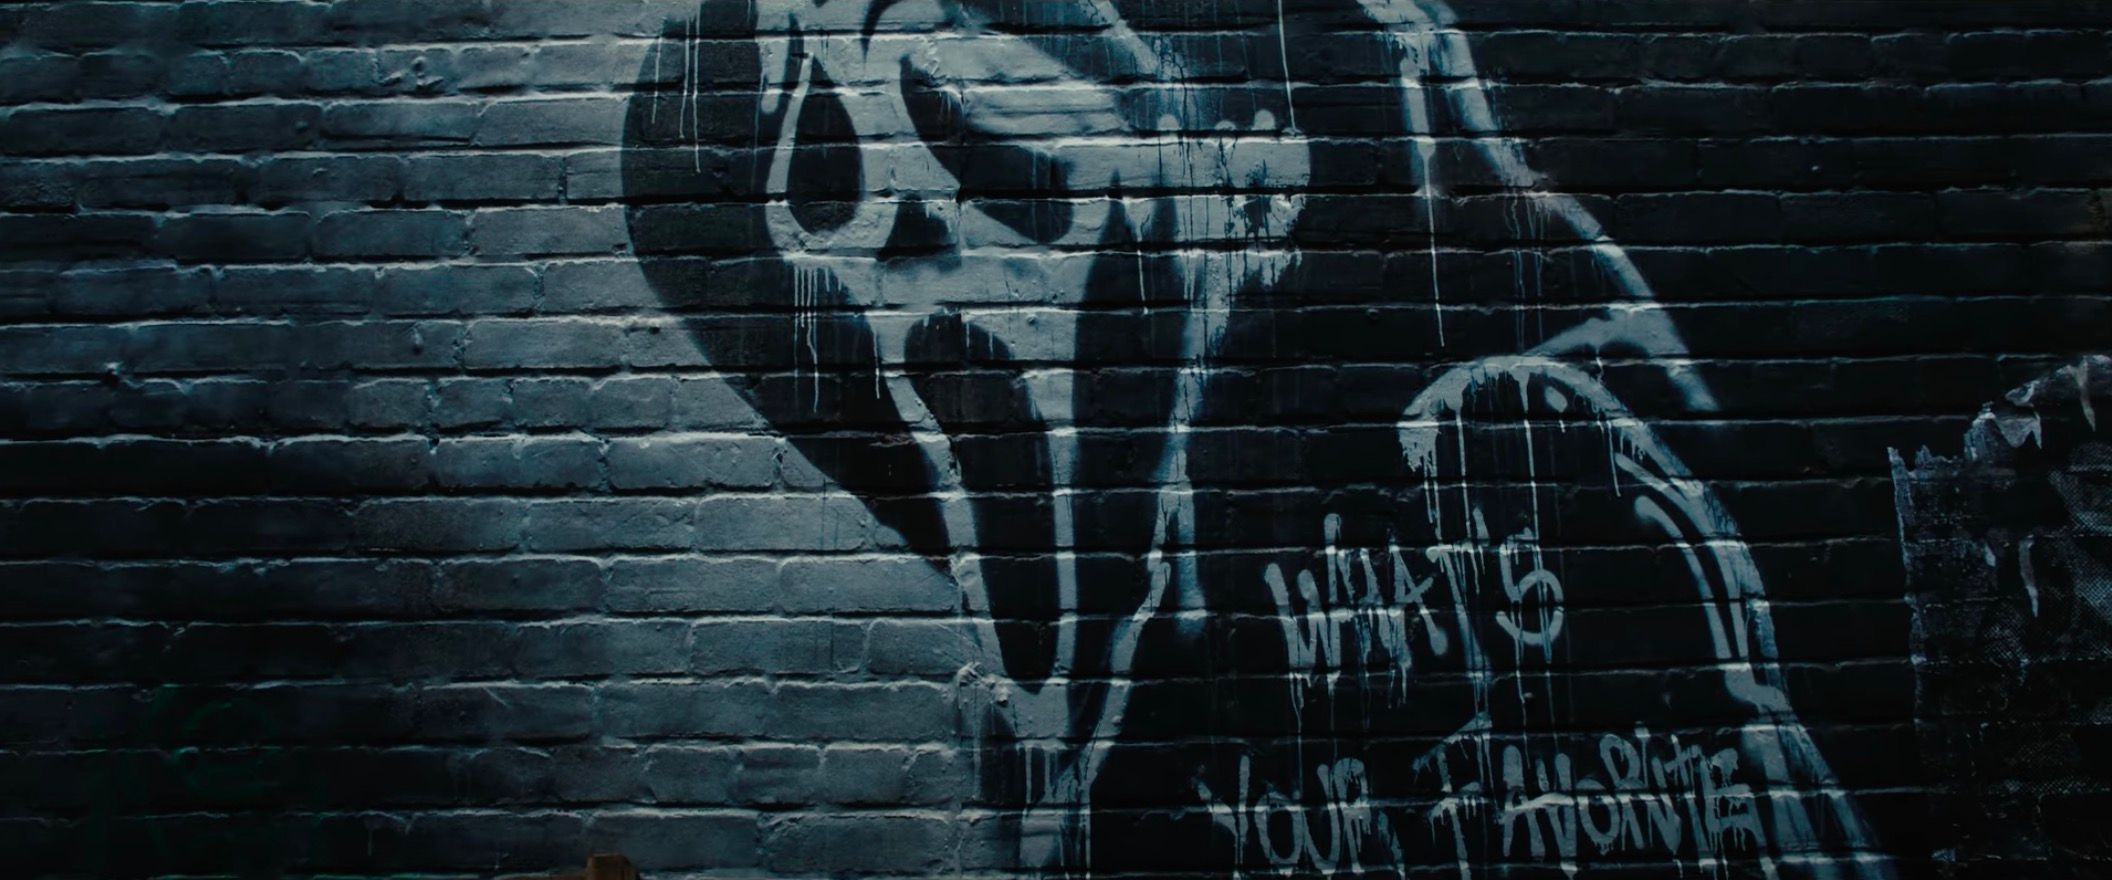 scream-6-ghostface-graffitti